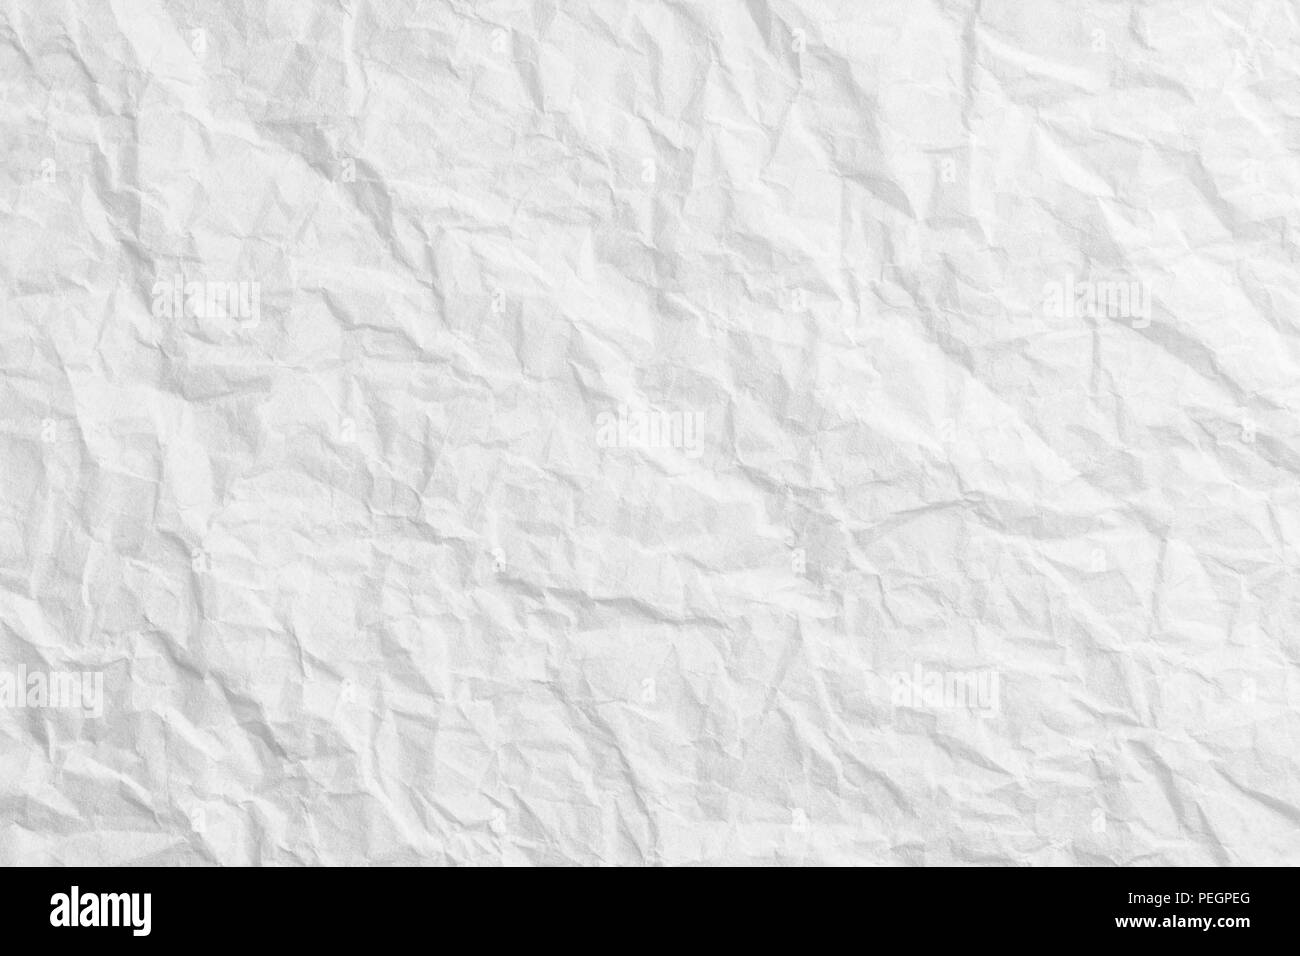 Zerknittertes Papier Textur, weiß gefaltetes Papier Hintergrund  Stockfotografie - Alamy